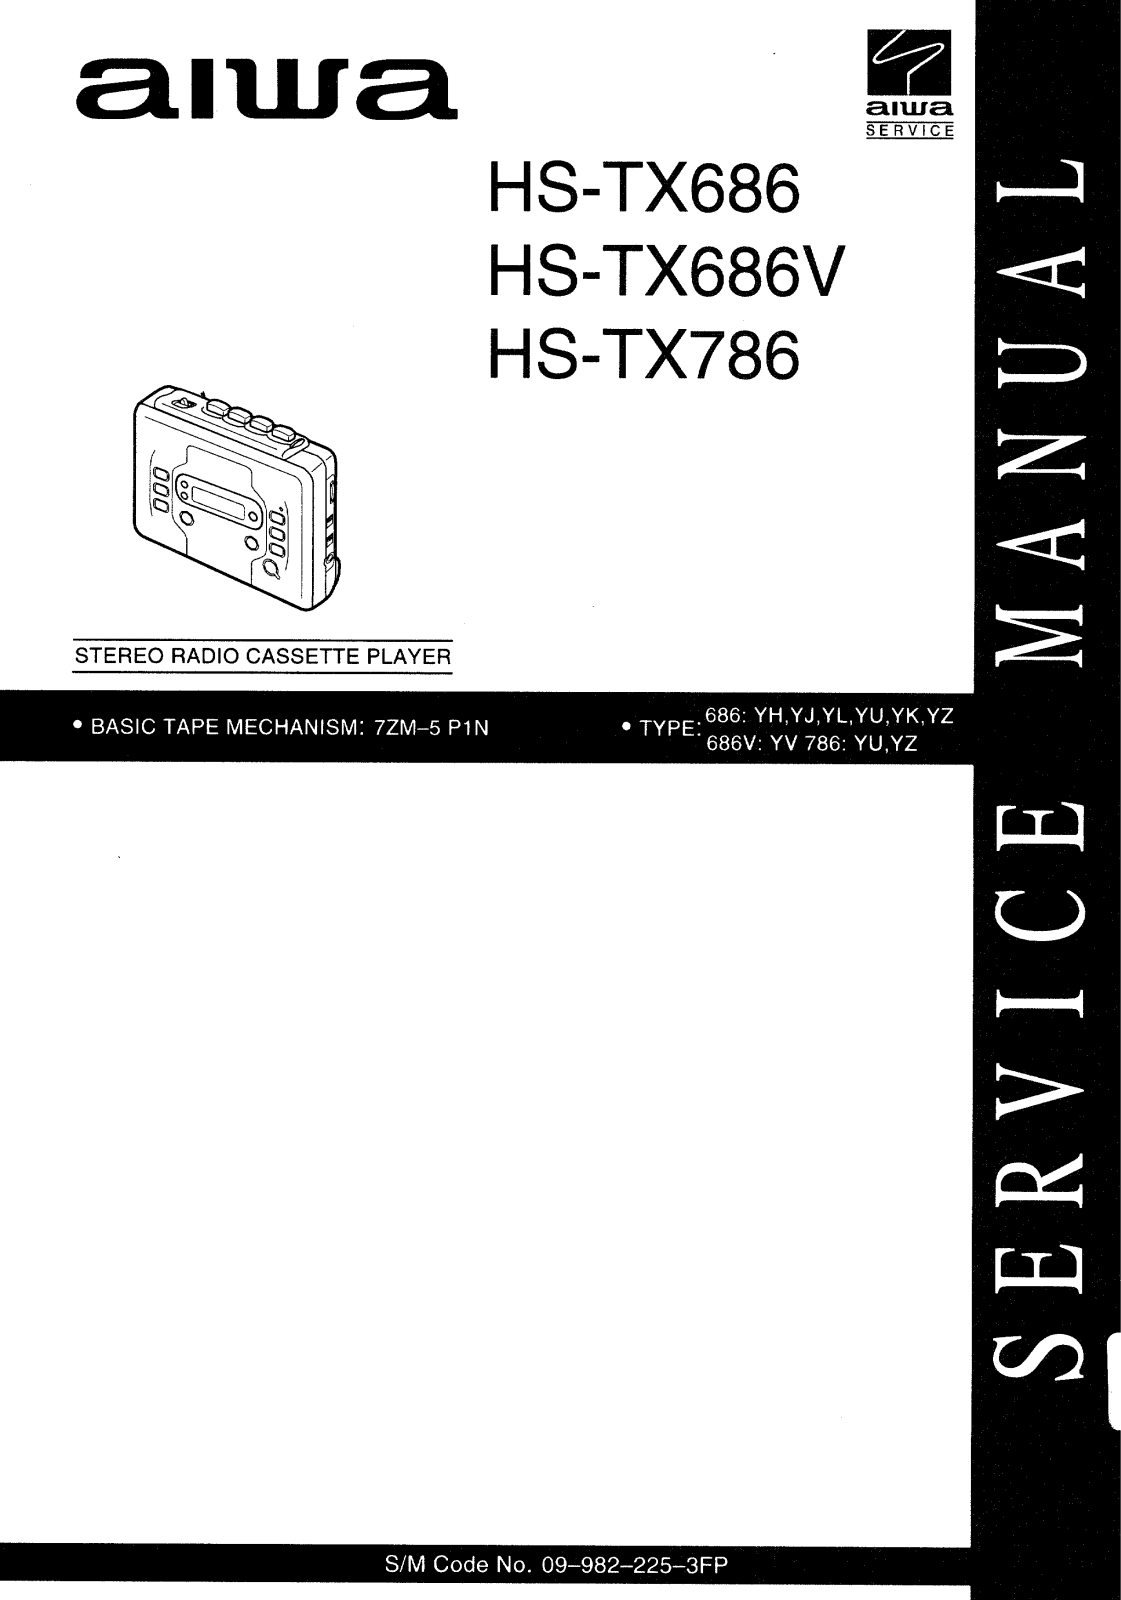 Aiwa HS-TX686, HS-TX686V, HS-TX786 User Manual